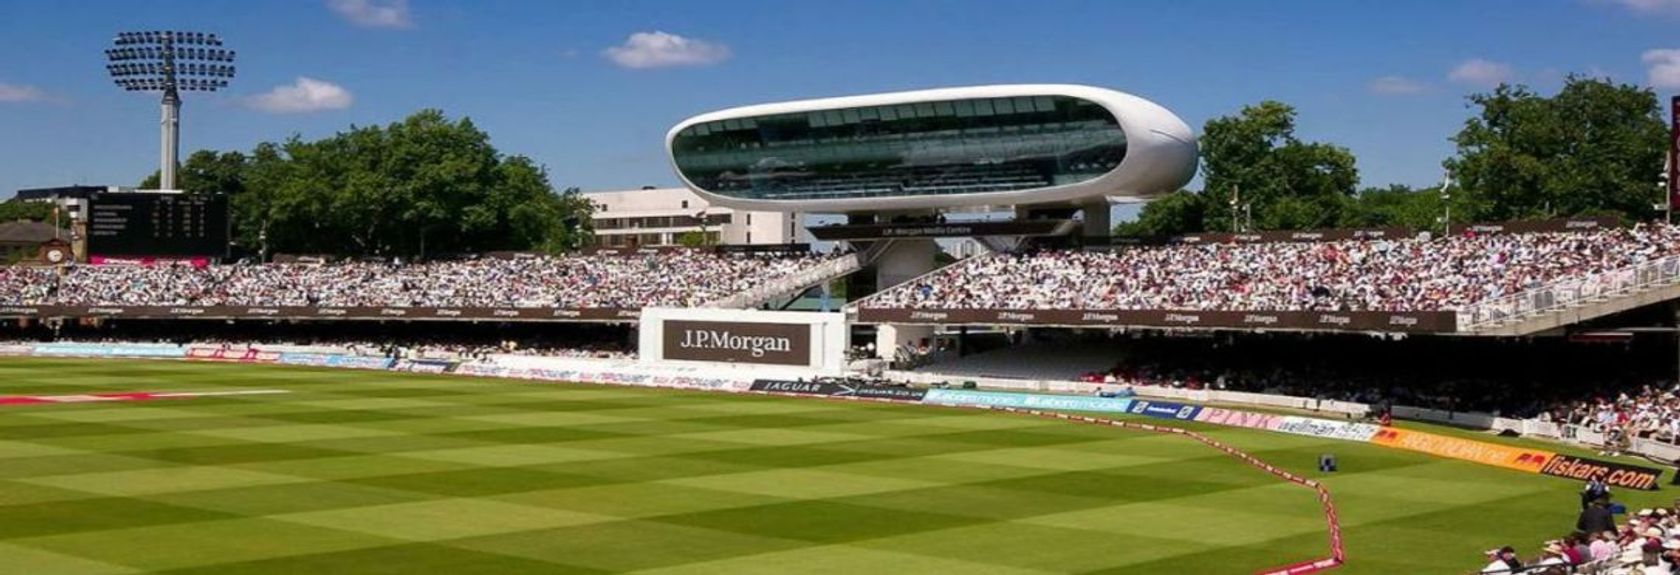 Este passeio lhe dá a oportunidade perfeita para descobrir o mundo do críquete. Dê uma olhada nos bastidores deste estádio histórico. O passeio leva 100 minutos e você terá uma visão completa de 'The Home of Cricket'.